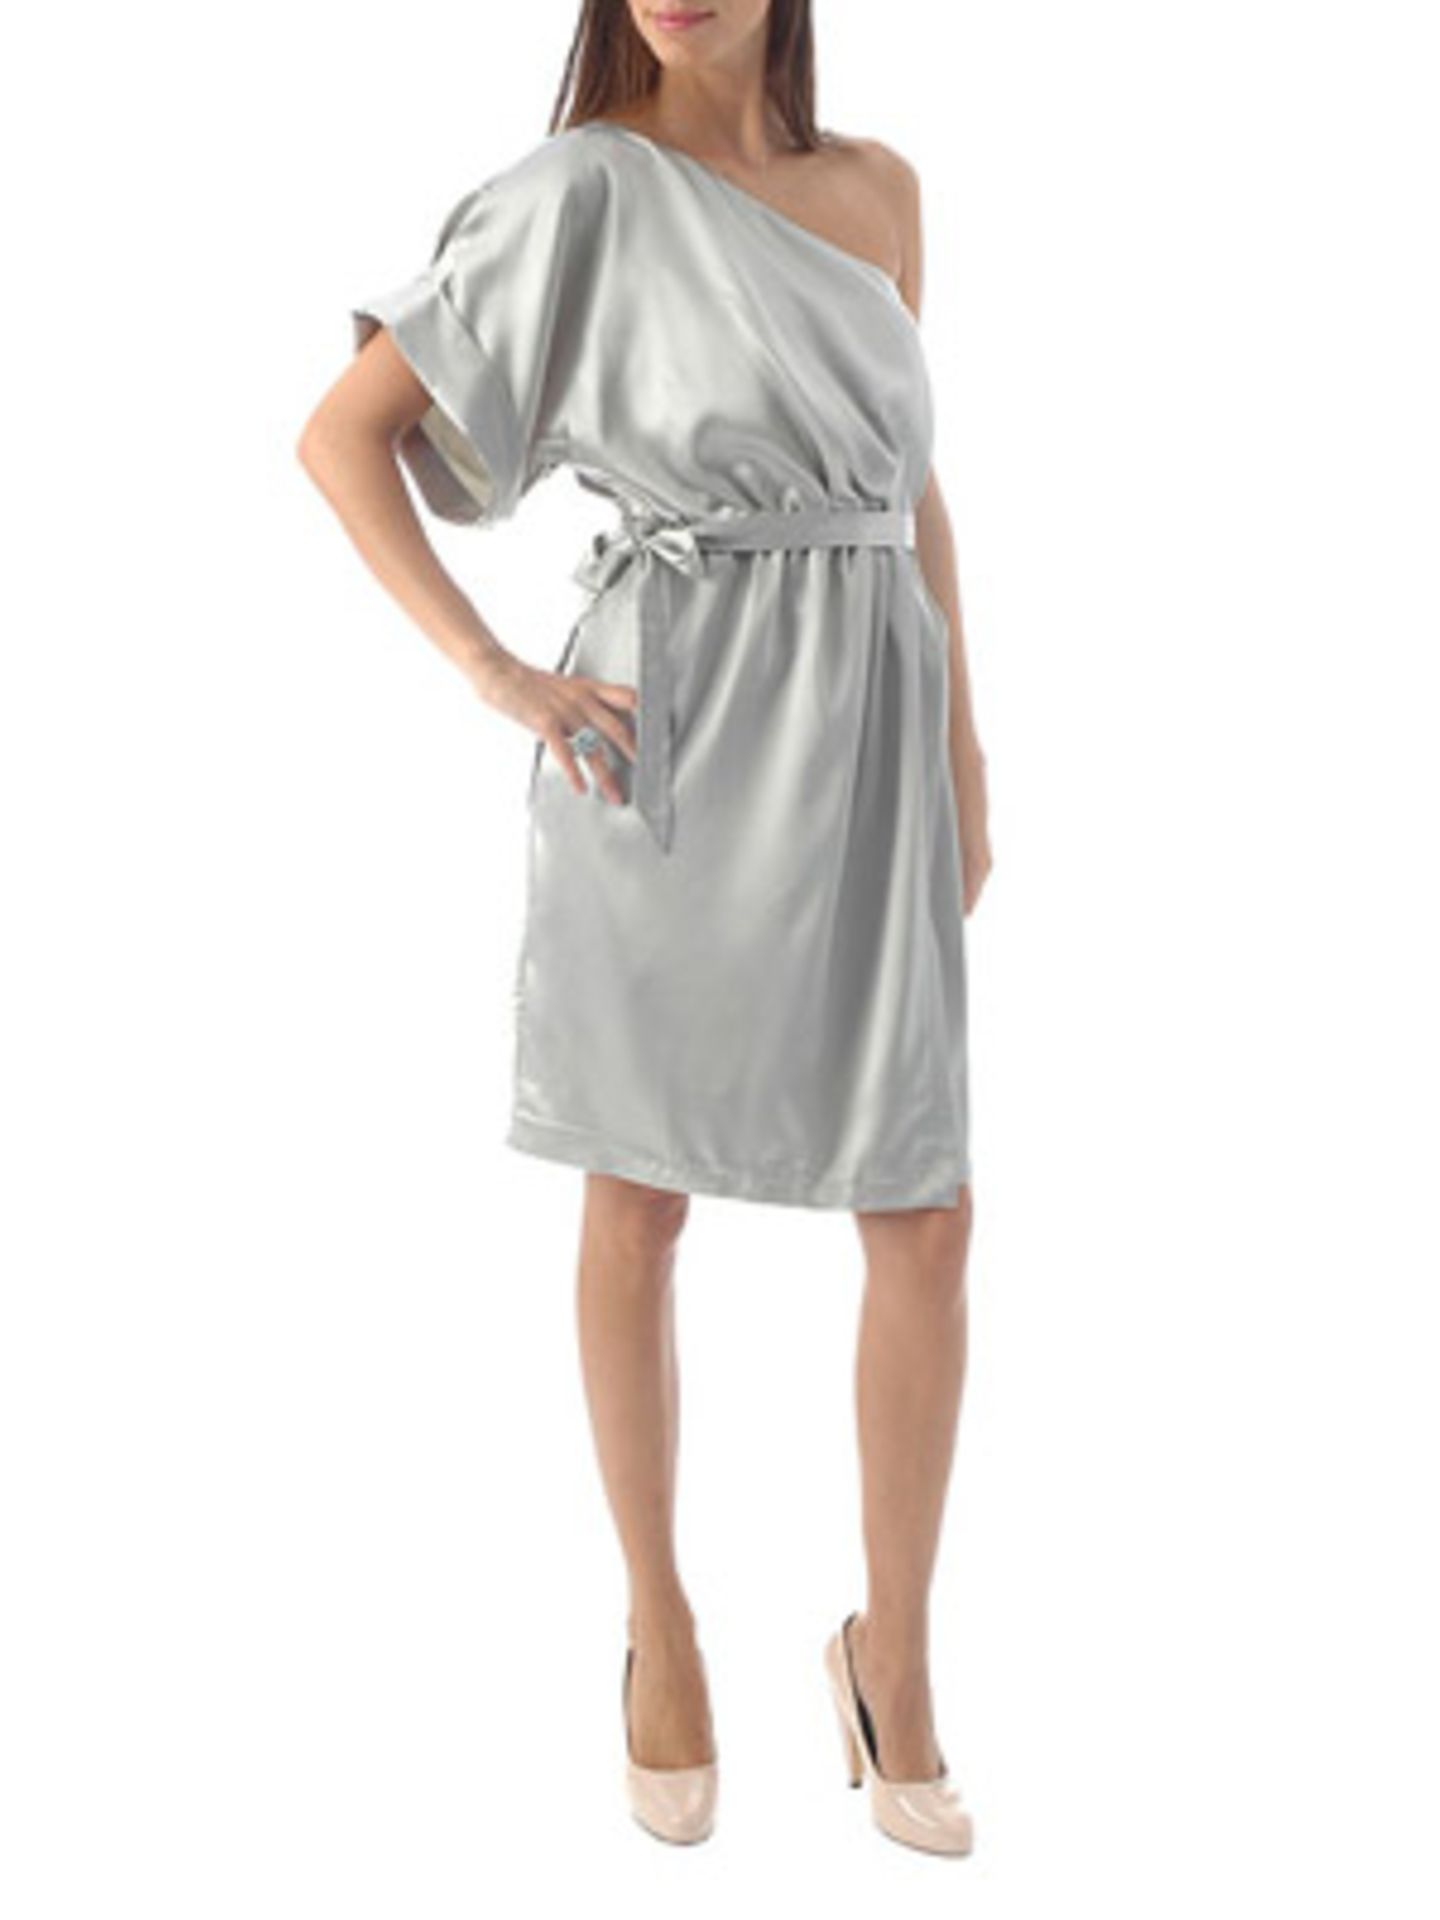 Asymmetrisches Kleid in Silber mit Taillenbetonung von Mango, ca. 60 Euro. Über  www.mangoshop.com.